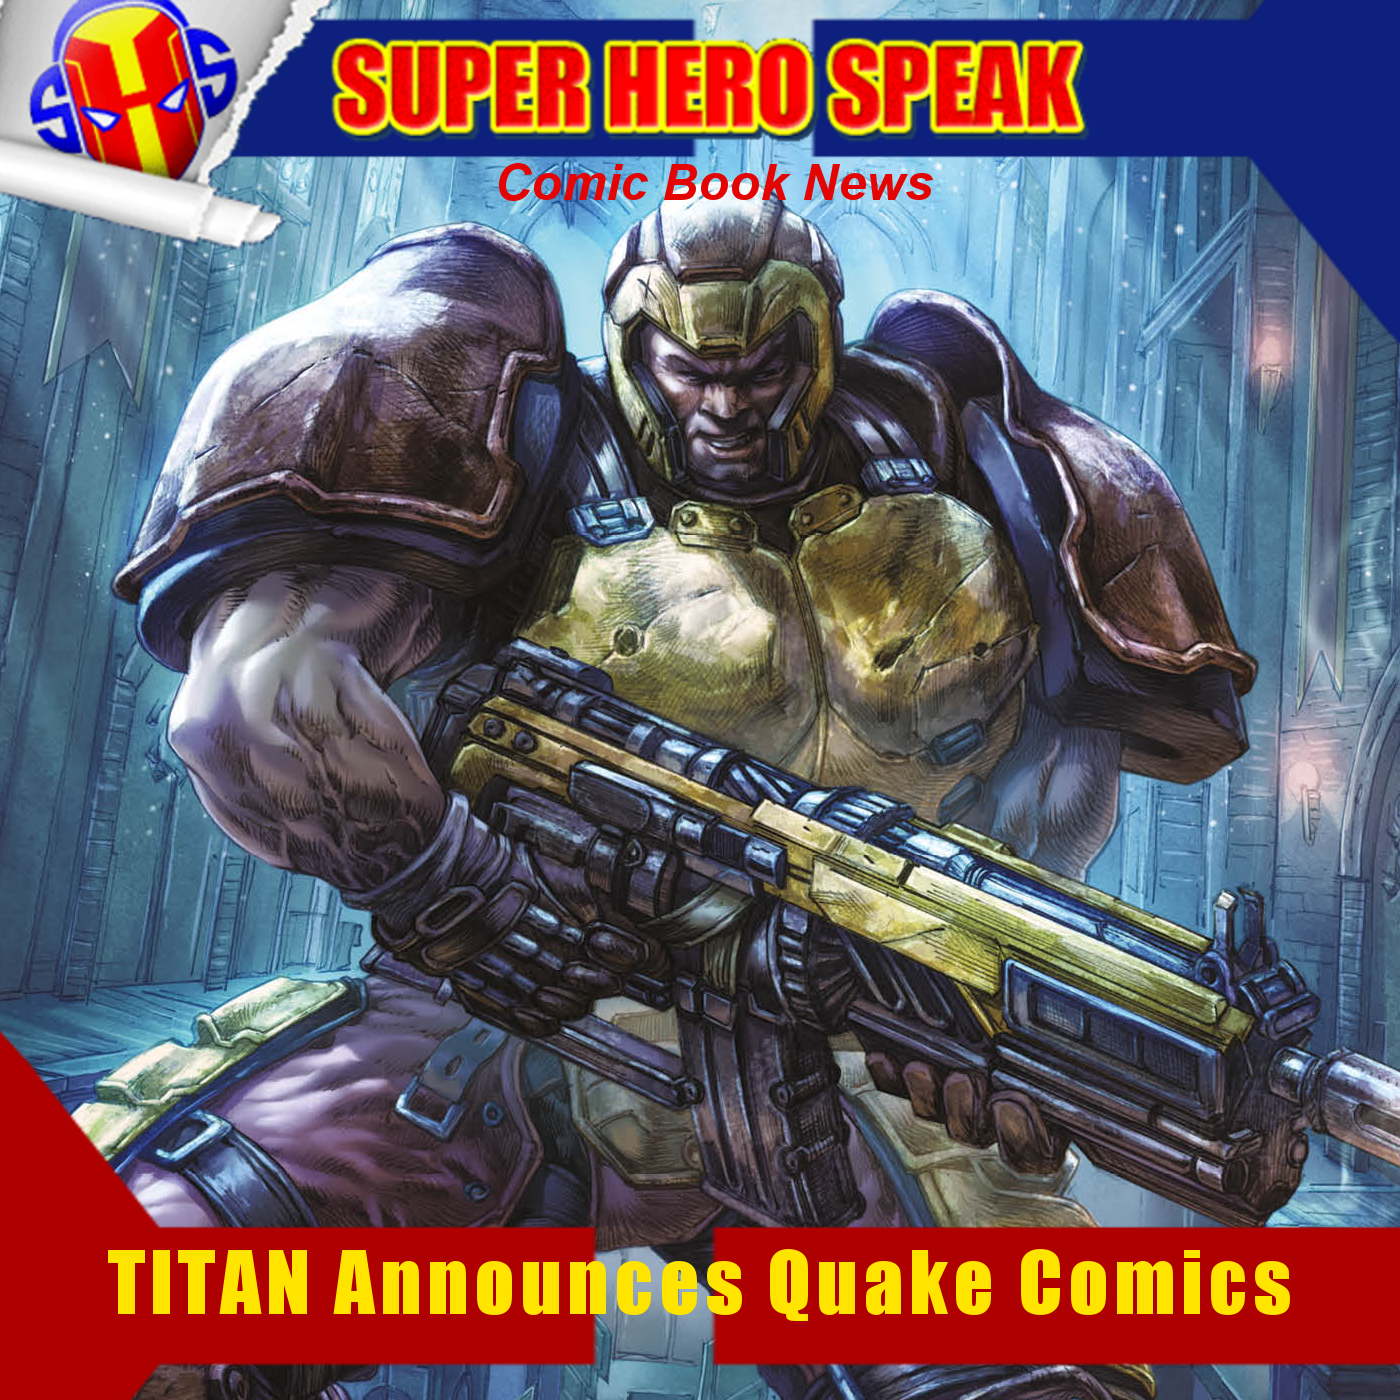 SHSNews: TITAN Announces Quake Comics